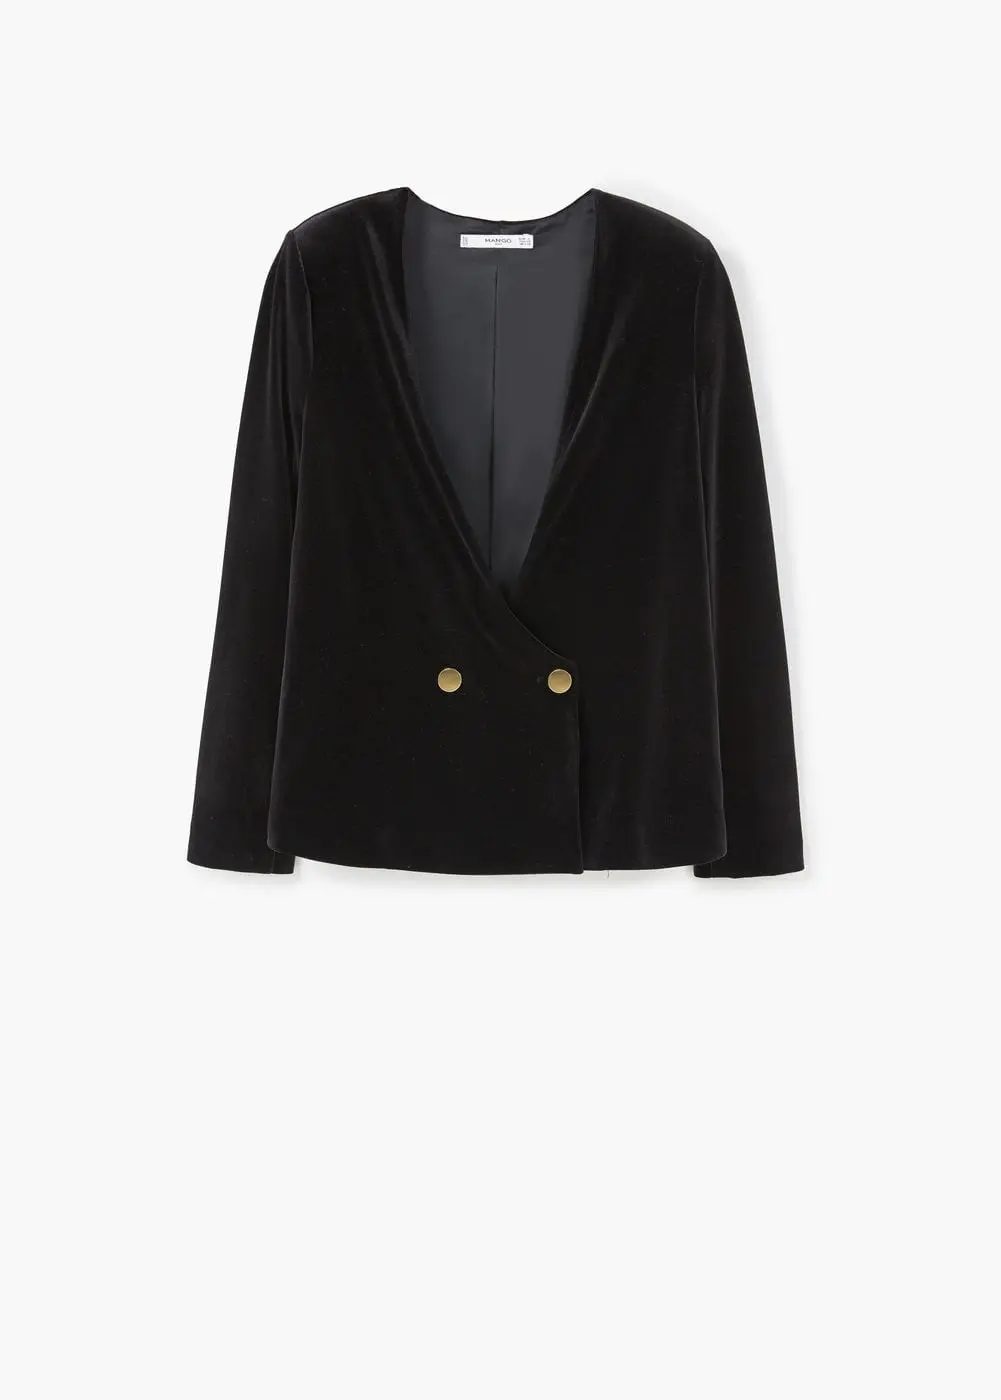 Velvet blazer Rp.399.000. (Image: shop.mango.com)